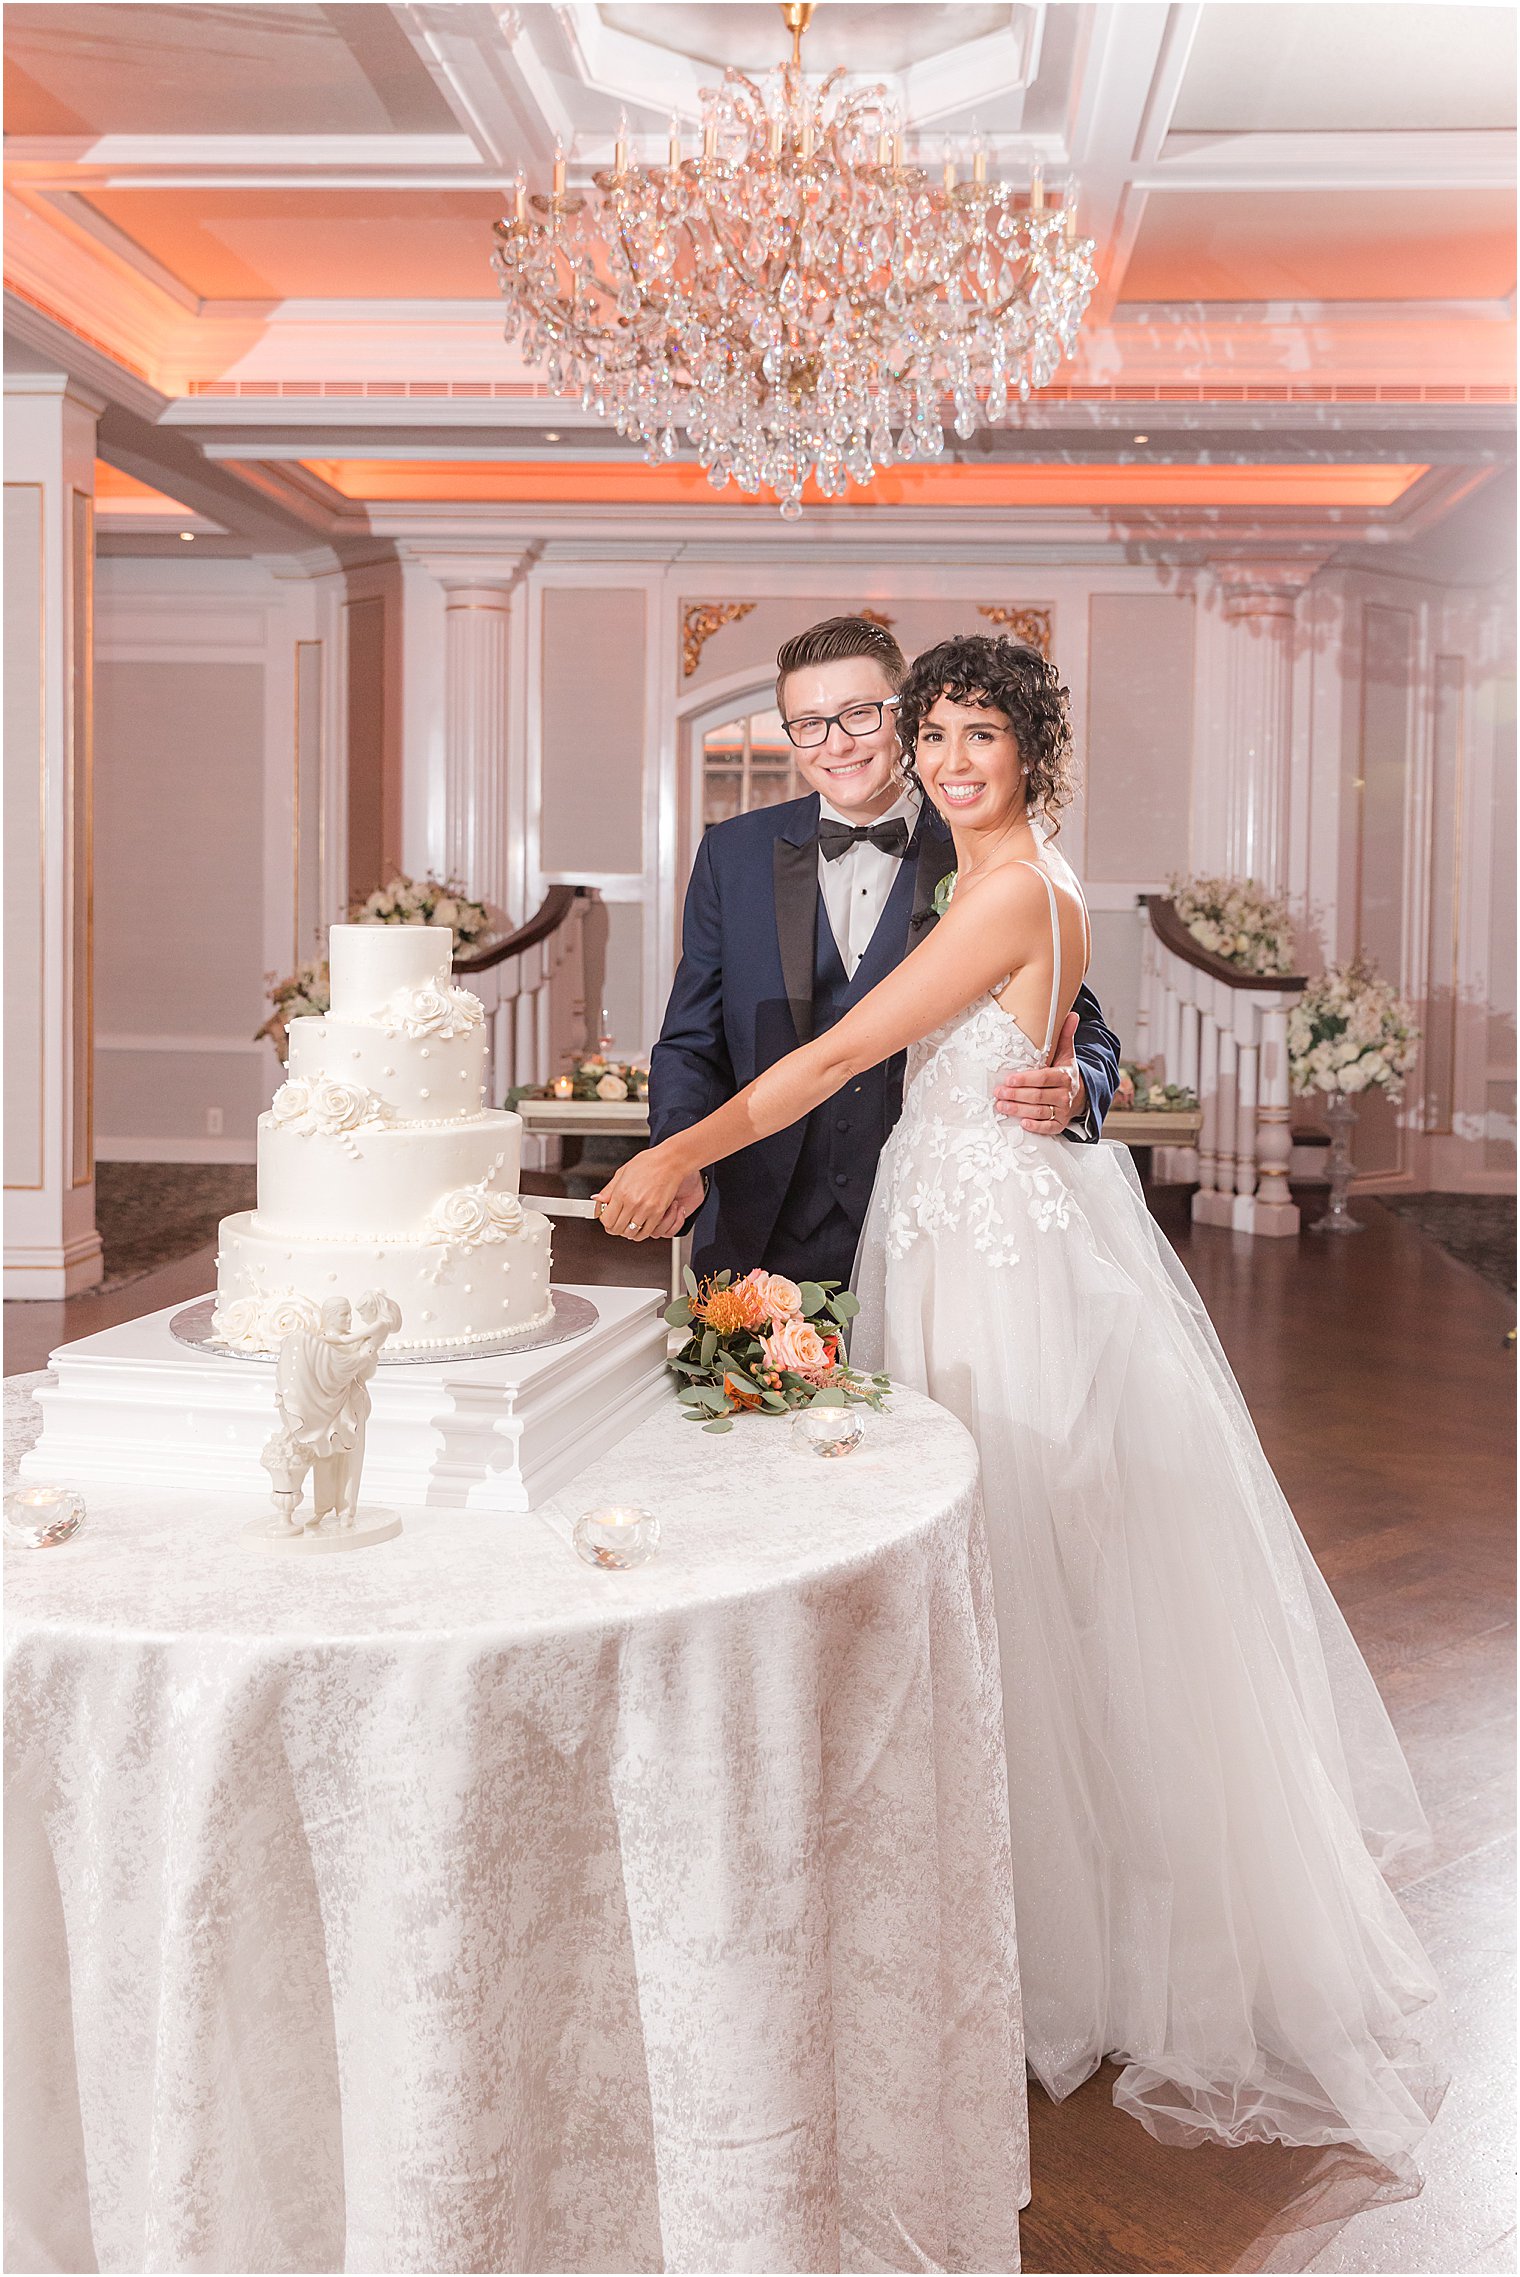 newlyweds cut wedding cake at Spring Lake NJ wedding reception